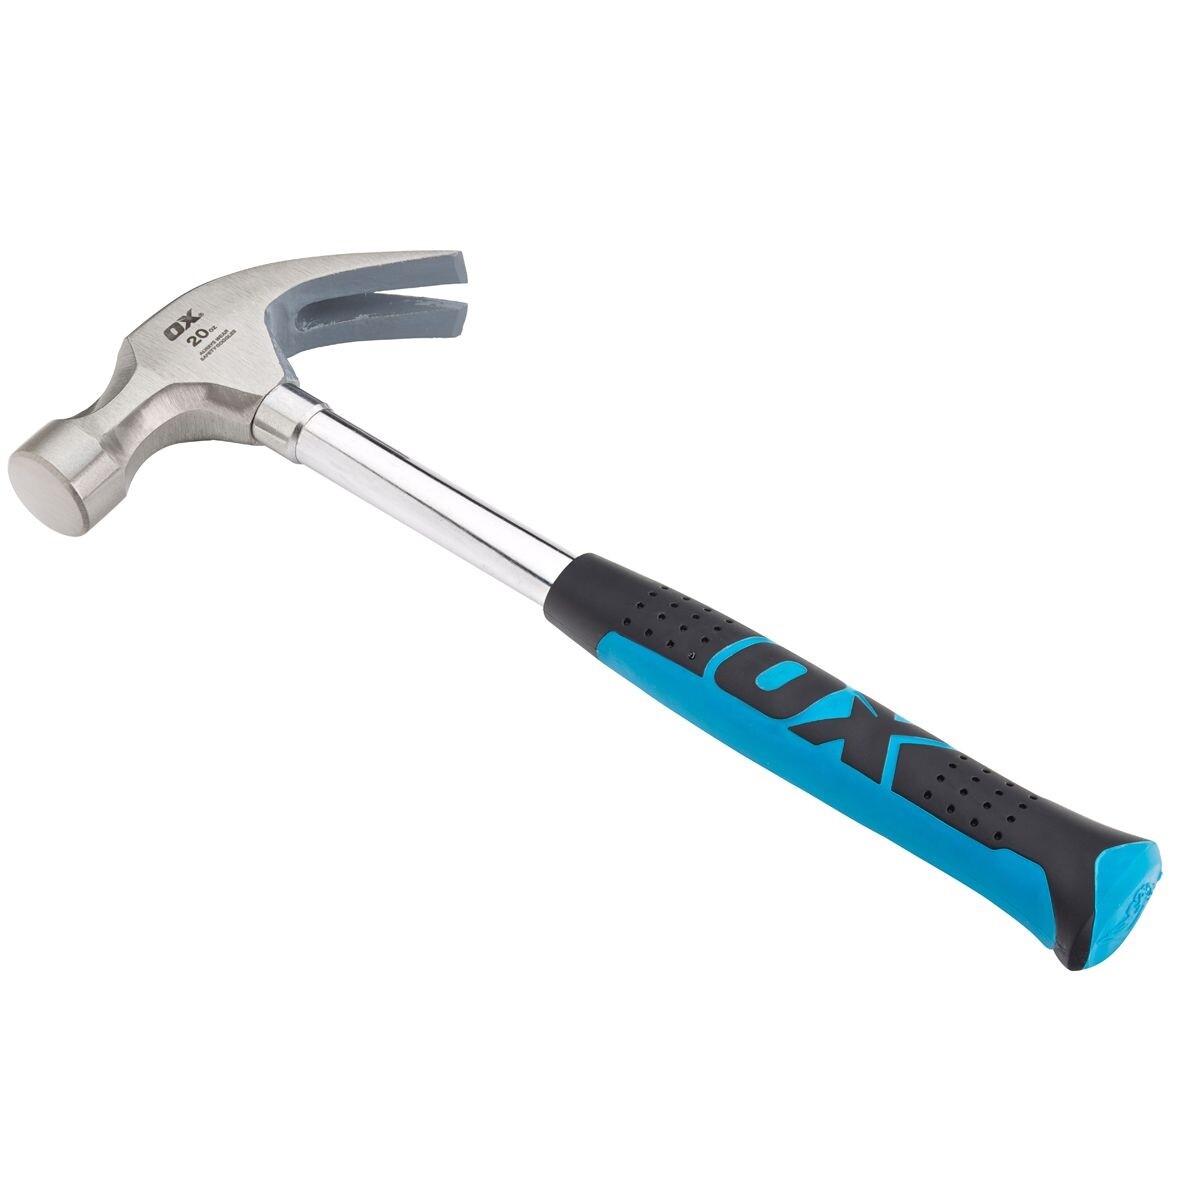 Trade Claw Hammer - 20oz